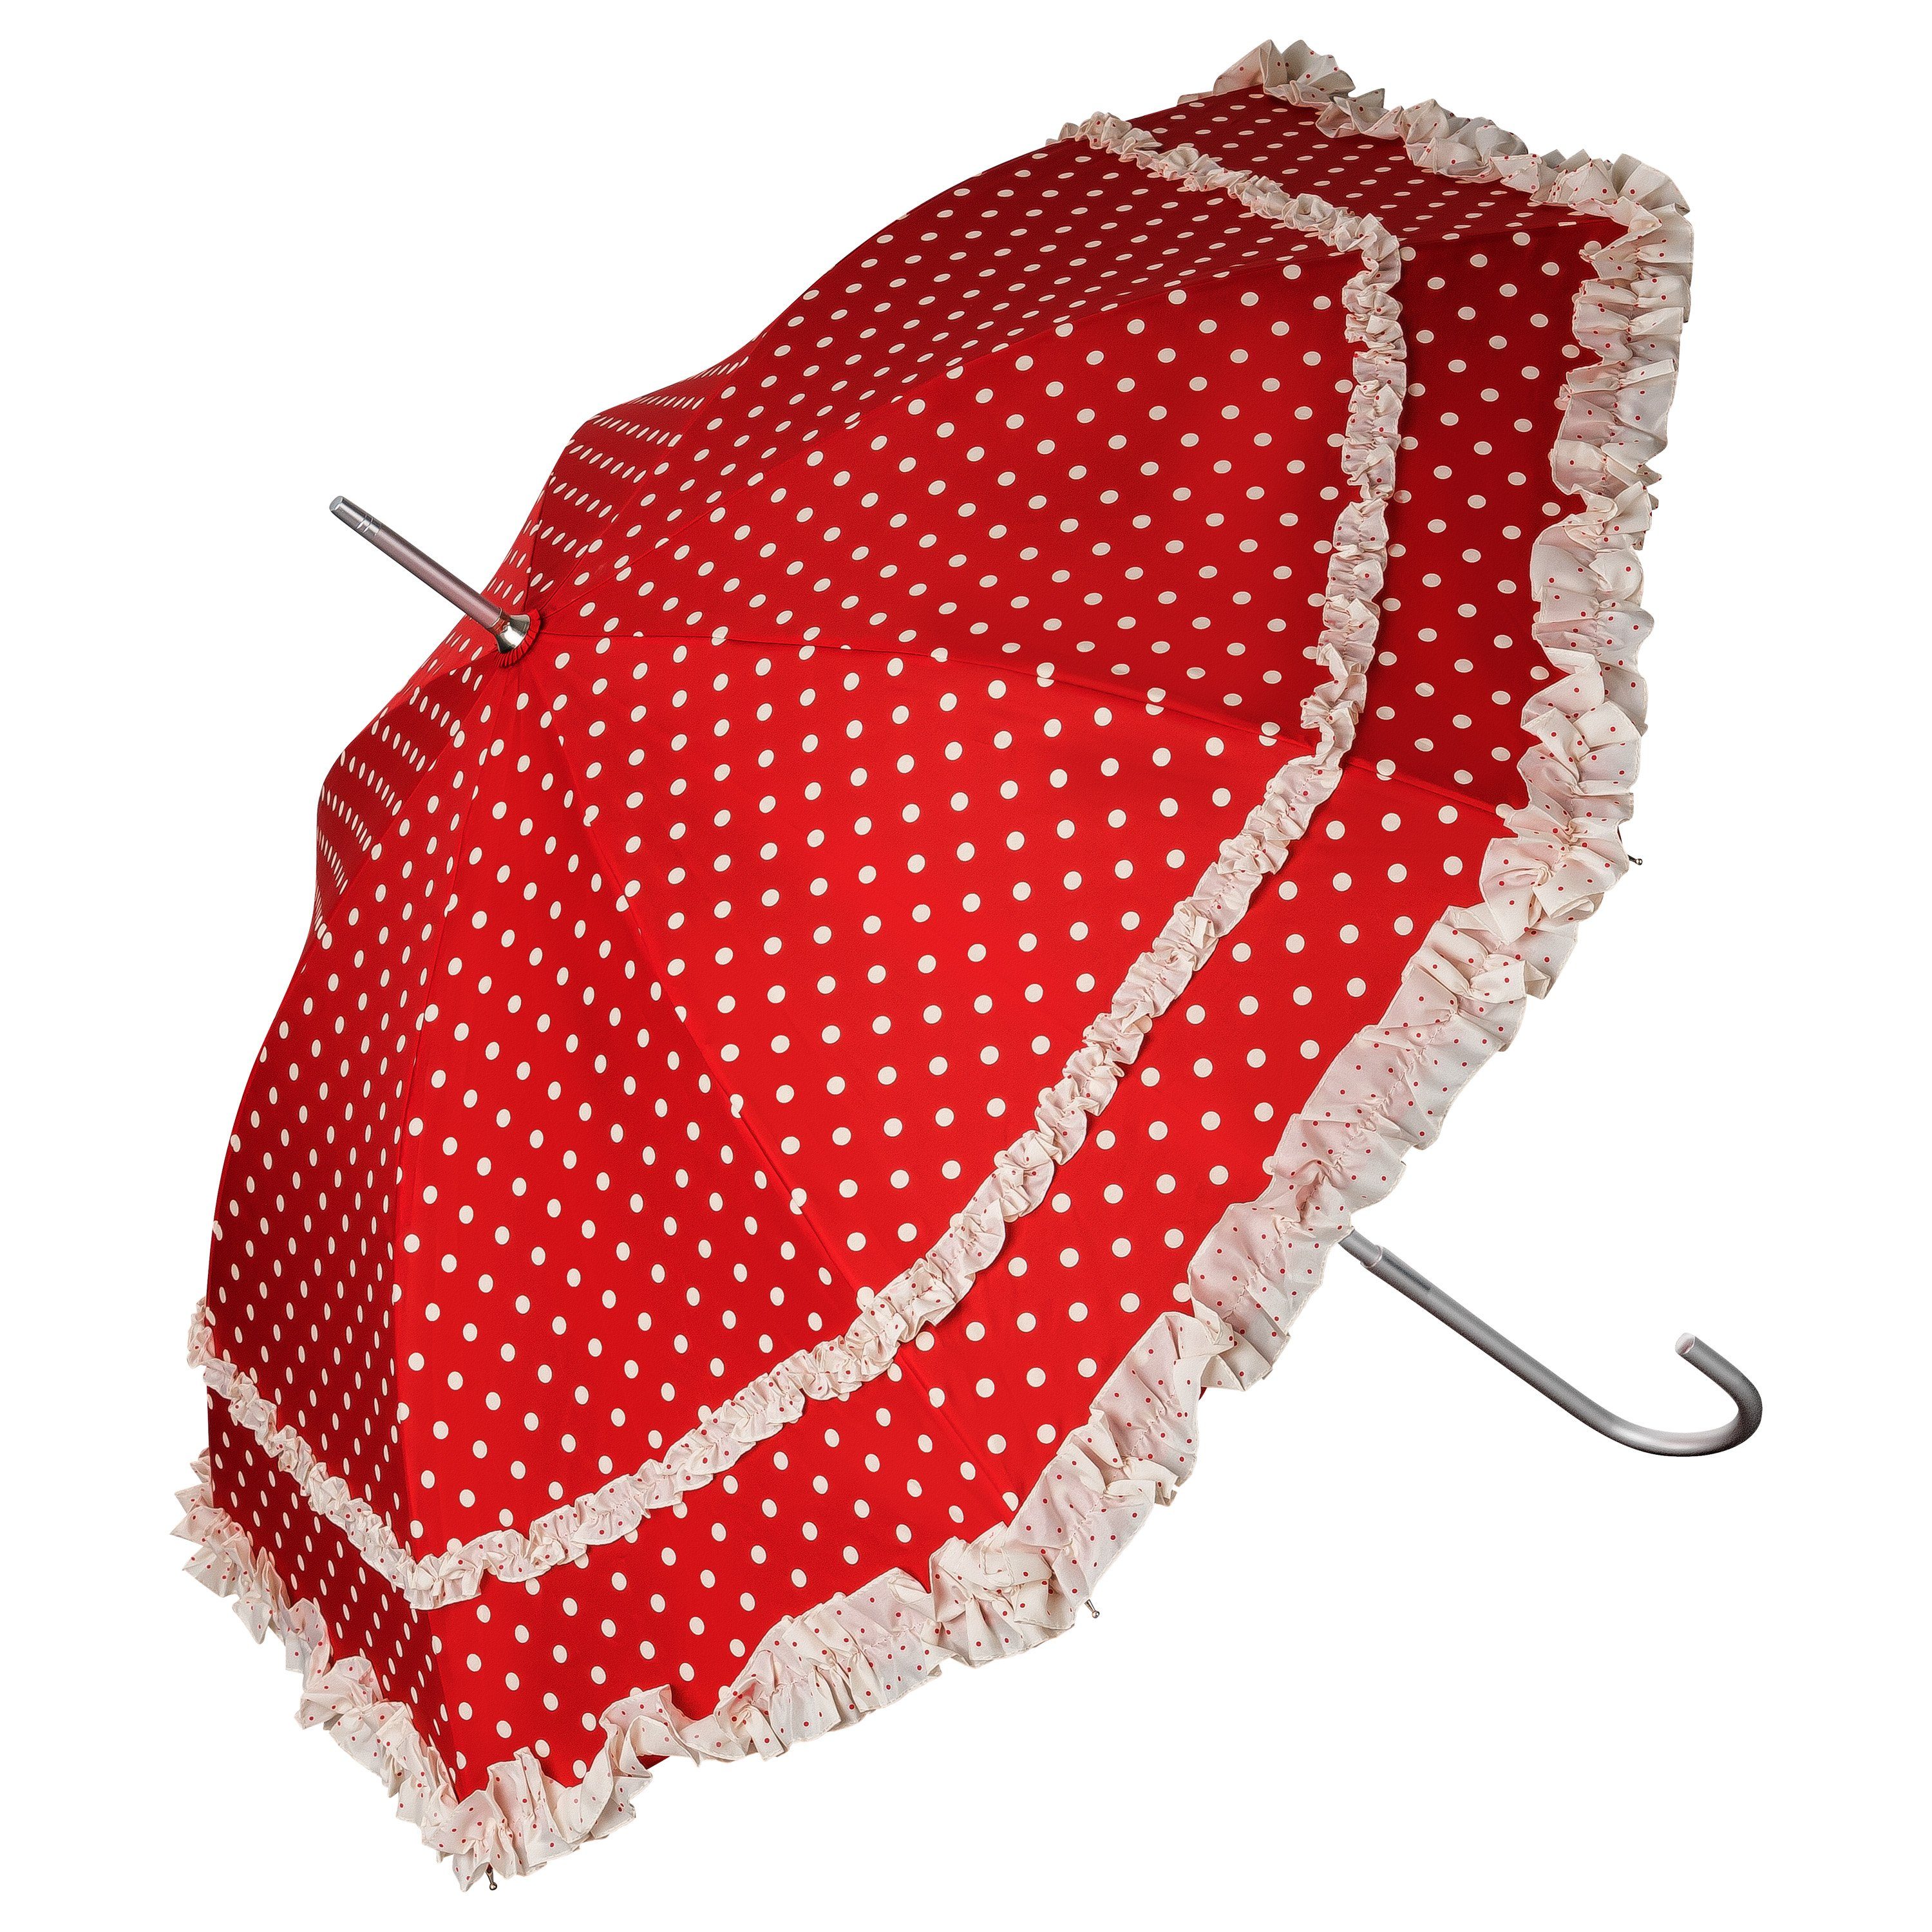 Sonnenschirm Rüschenkanten rot in Regenschirm von Stockregenschirm Mary, Lilienfeld mit Punkten zwei Hochzeitsschirm creme